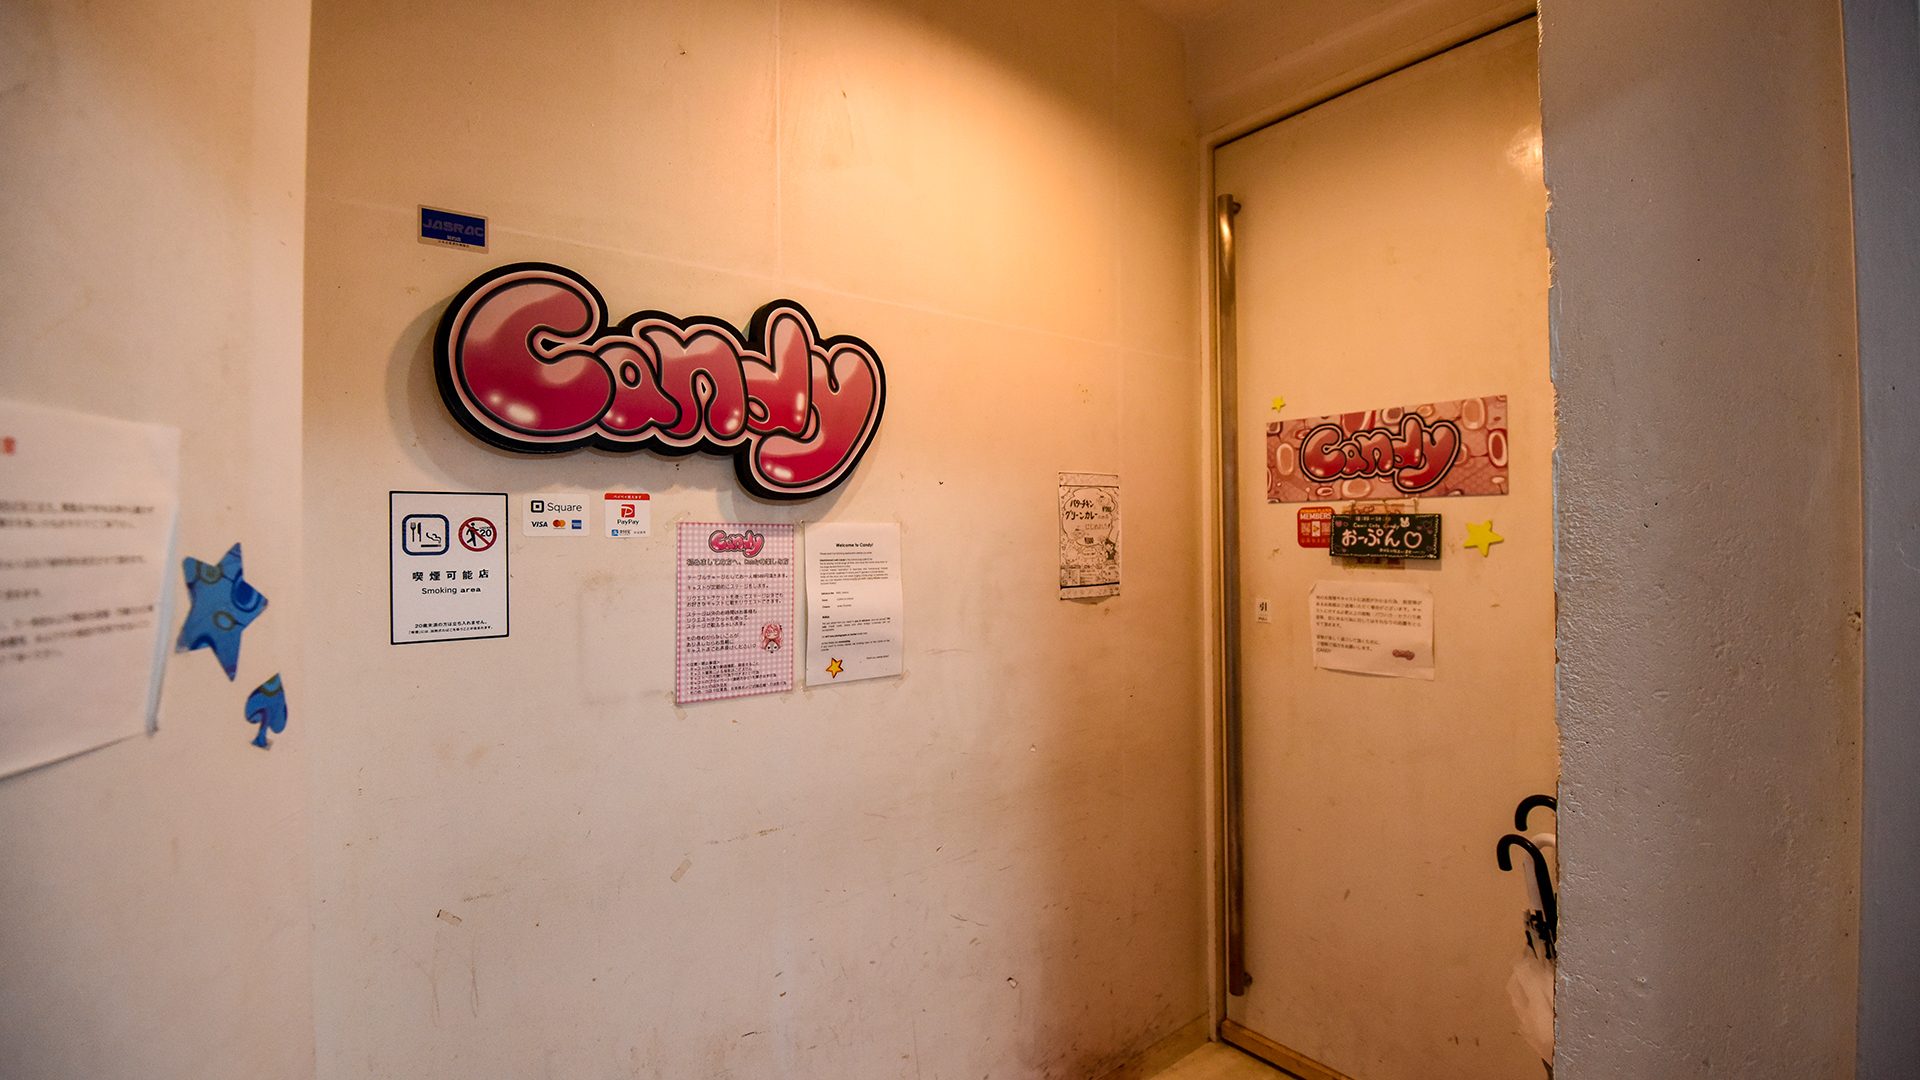 那覇市のサブカルカフェ「Candy」